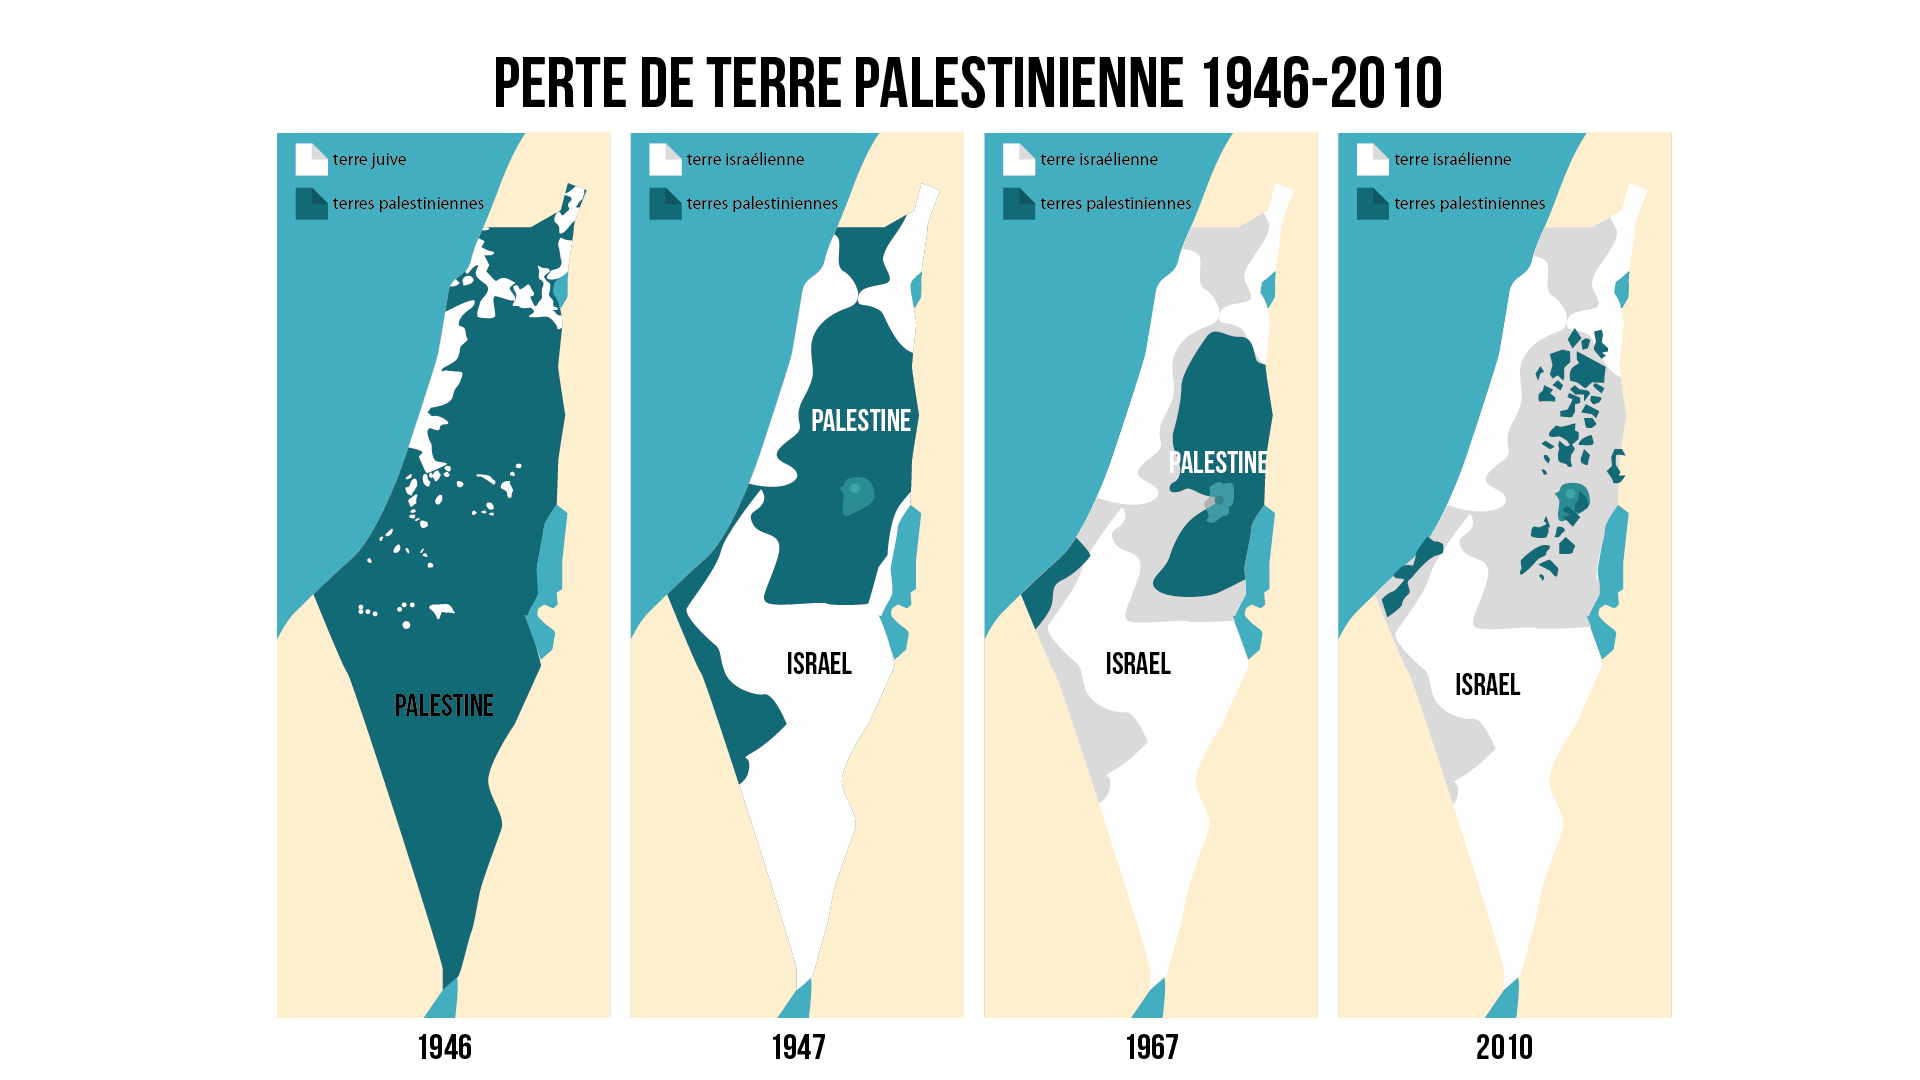 histoire-terminale-le-conflit-israelo-palestinien-de-1947-a-nos-jours-img5.png